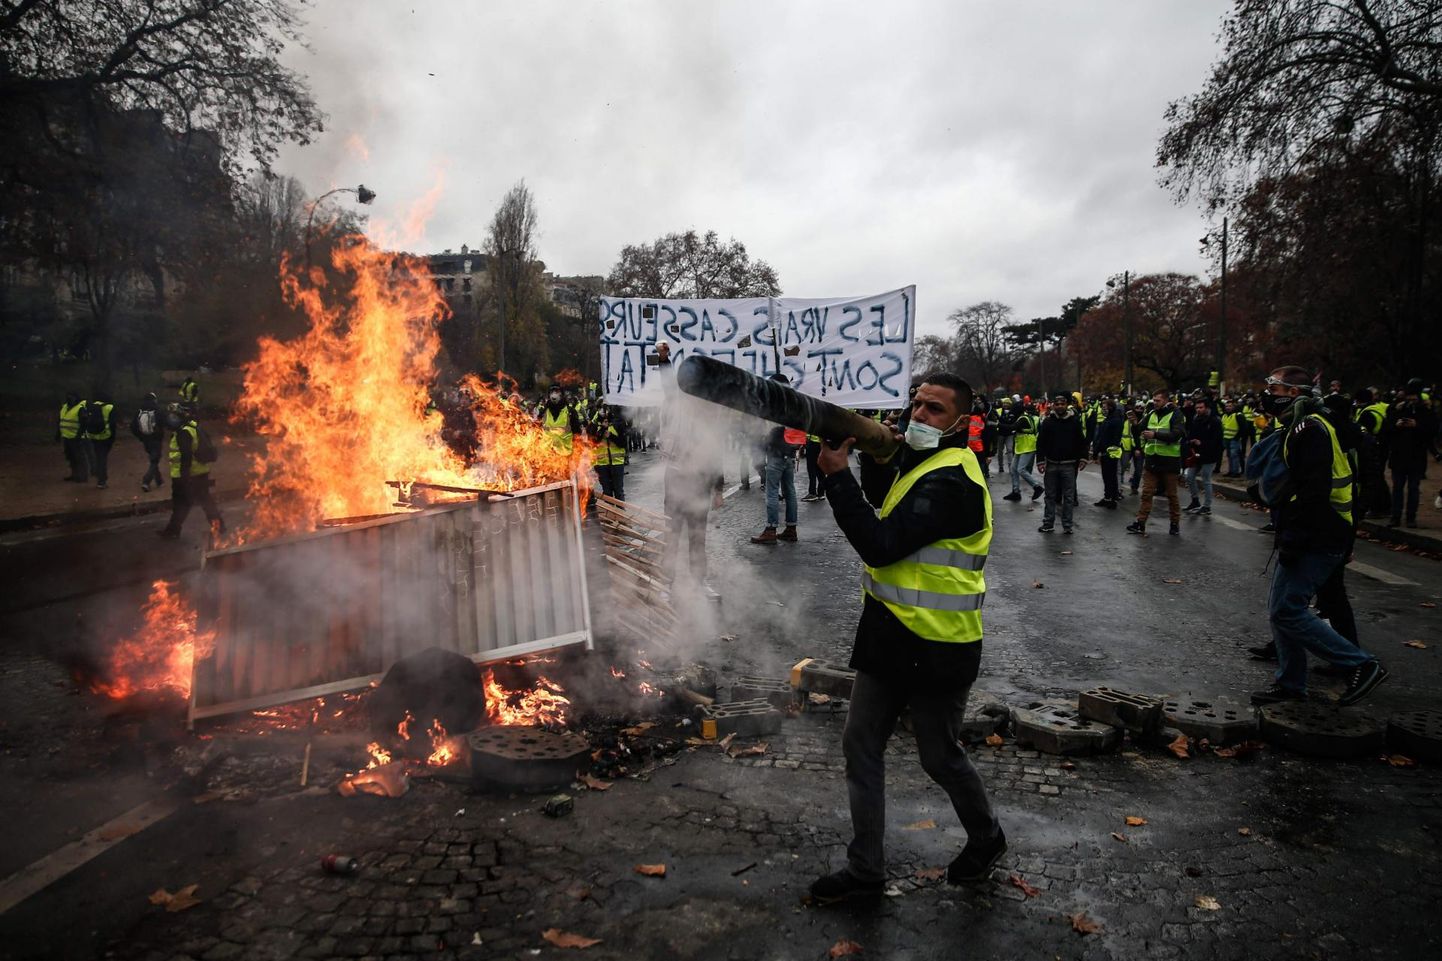 Eelmisel nädalavahetusel jätsid kollavestidest protestijad endast maha rüüstatud Pariisi. Liikumise üks esindajaid ennustab eelolevaks nädalalõpuks veel hullemat kaost.